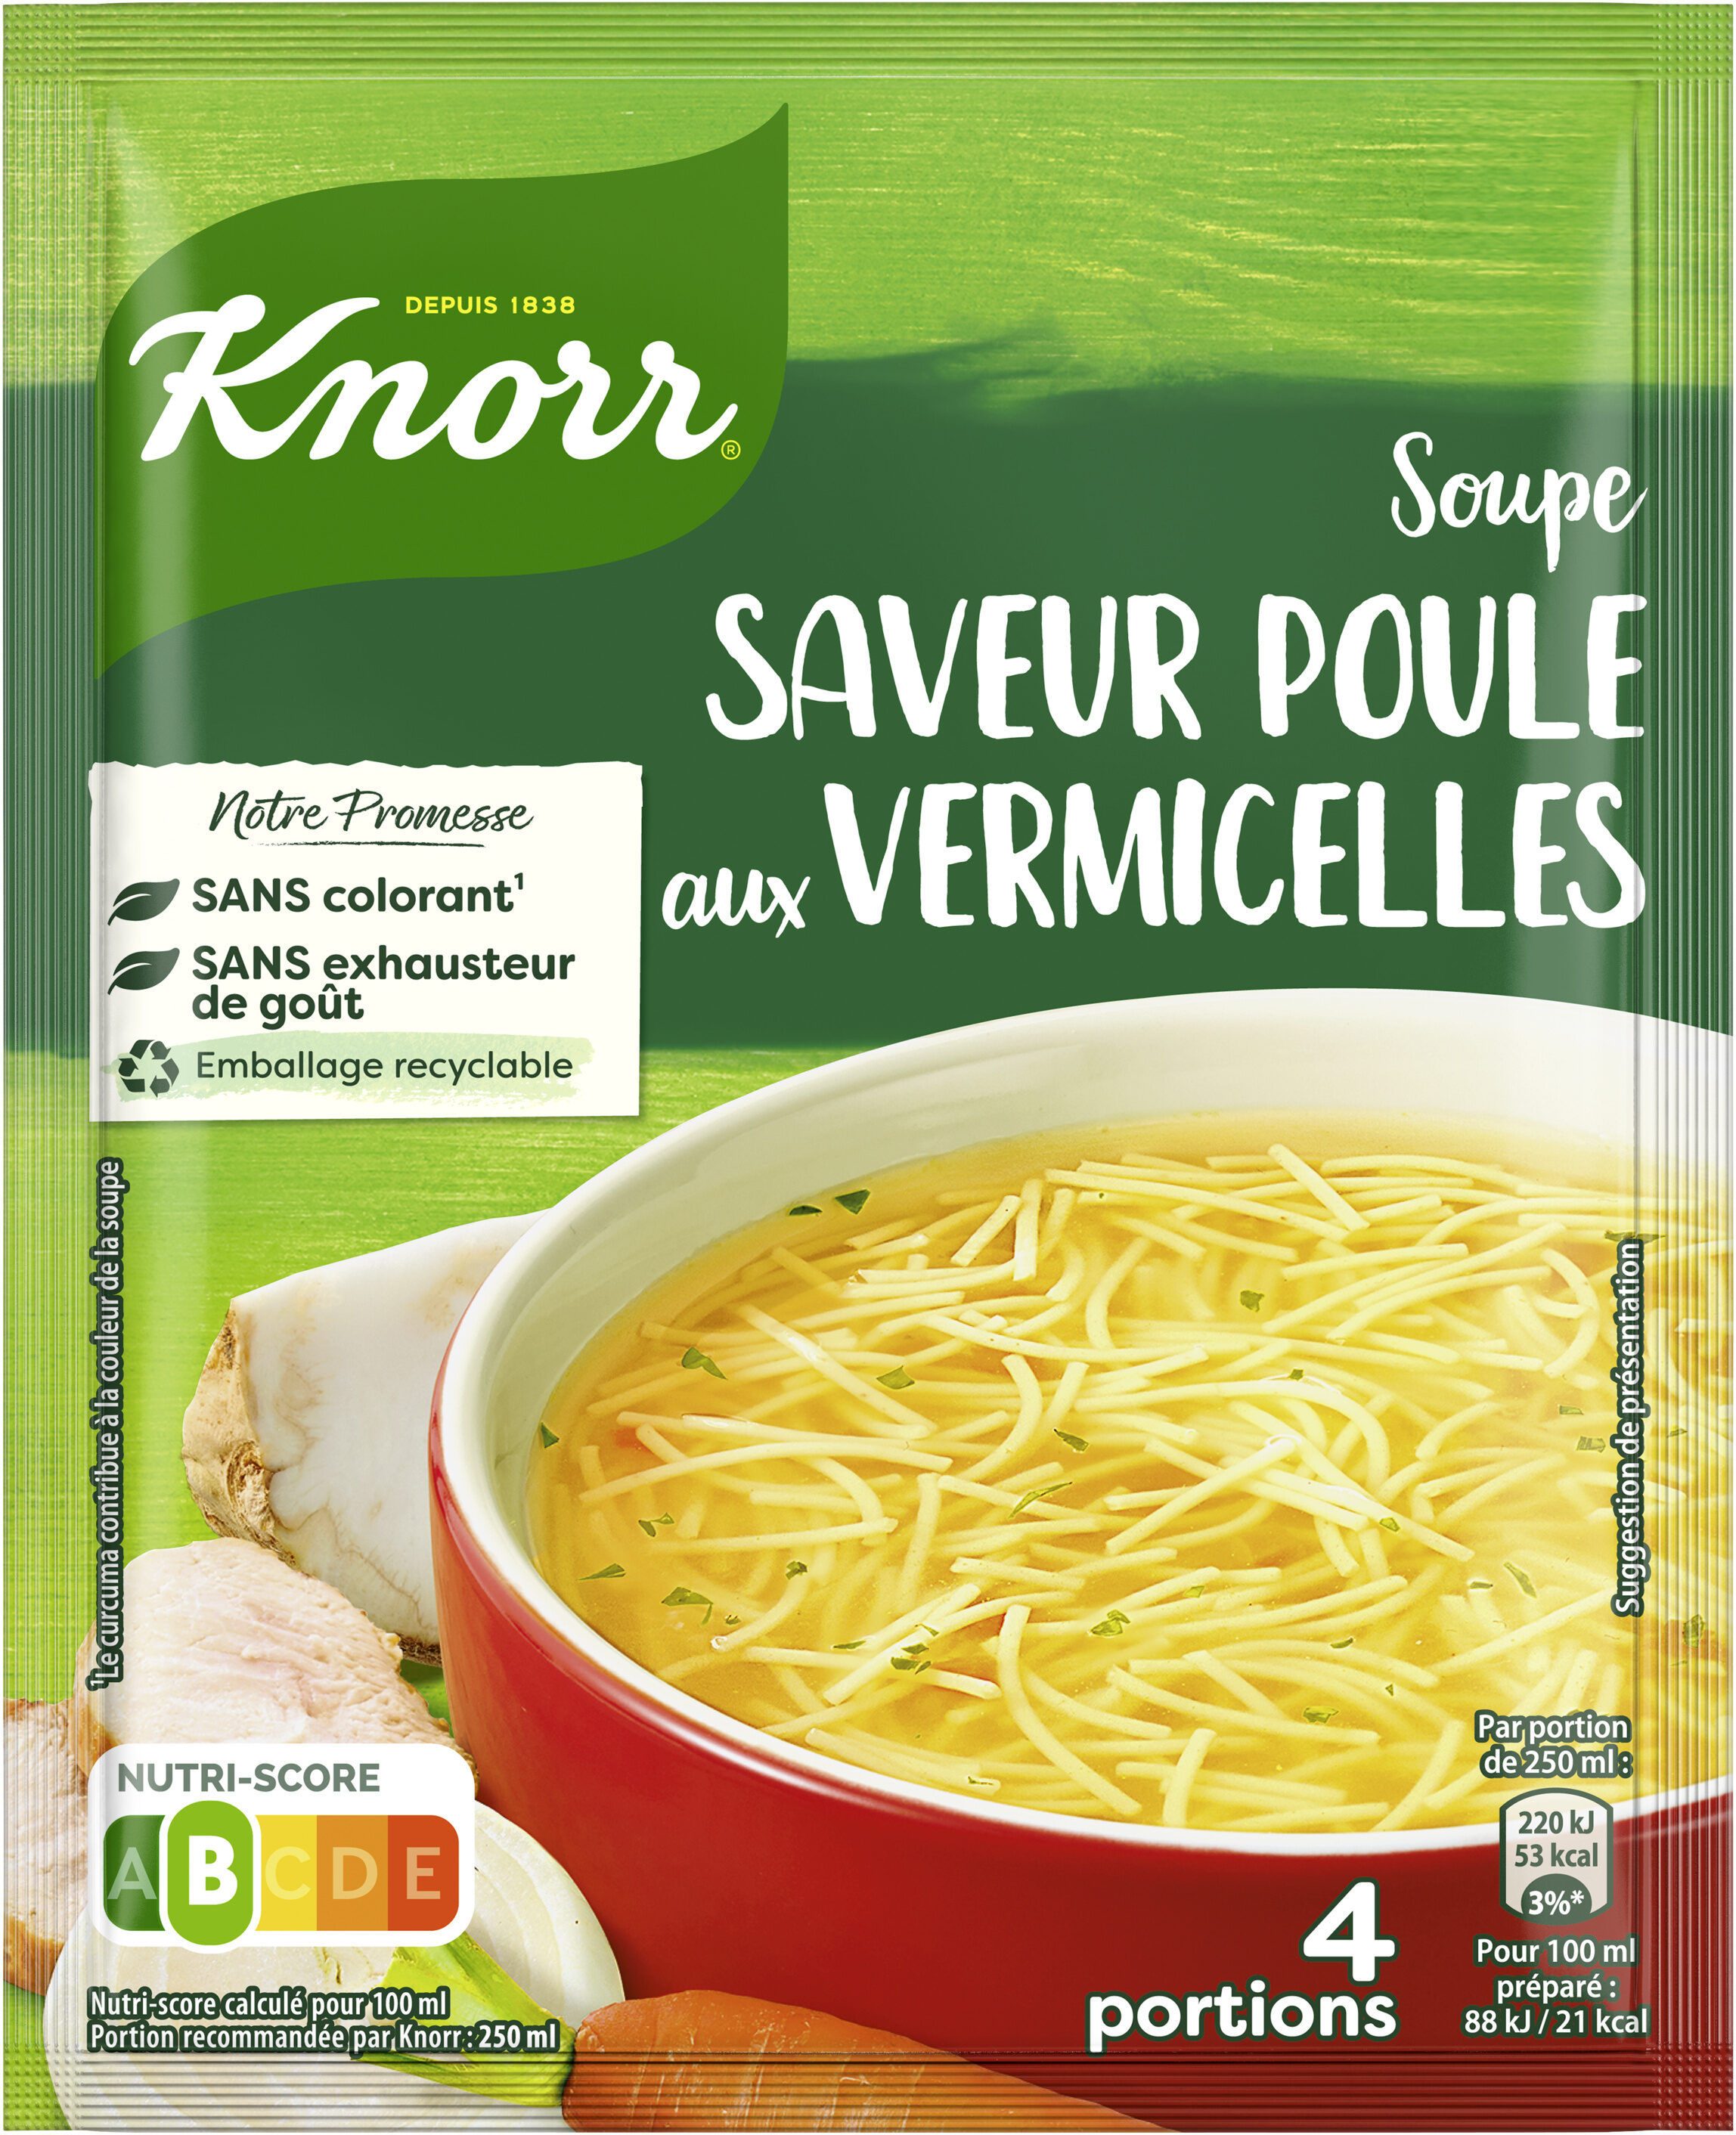 Soupe SAVEUR POULE aux VERMICELLES - Produkt - fr